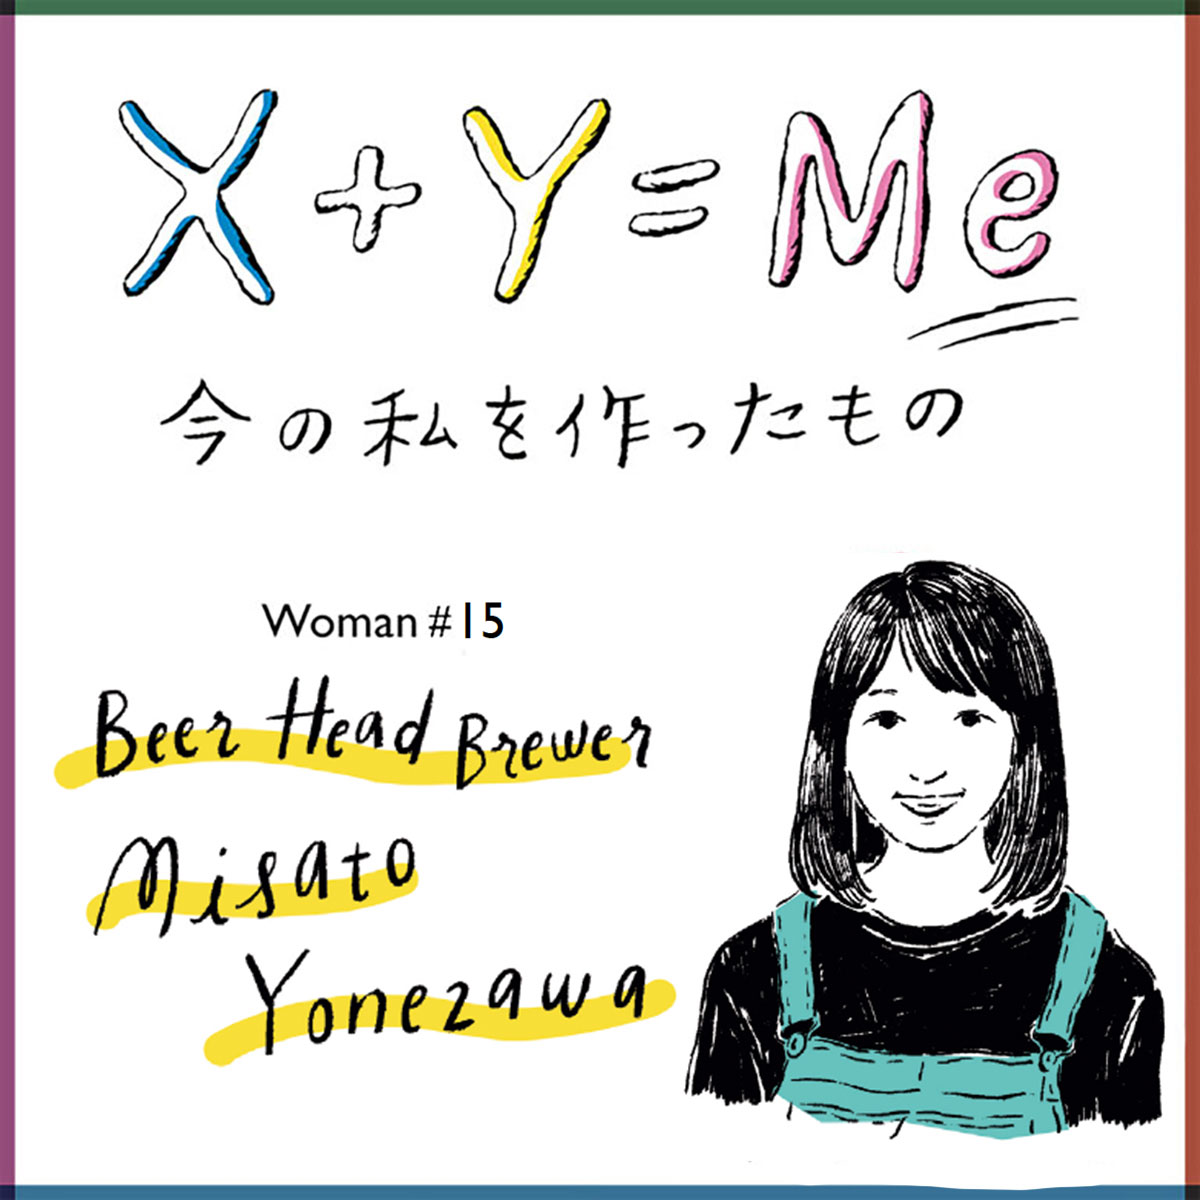 米澤美里の「今の私を作ったもの」連載X+Y=Me